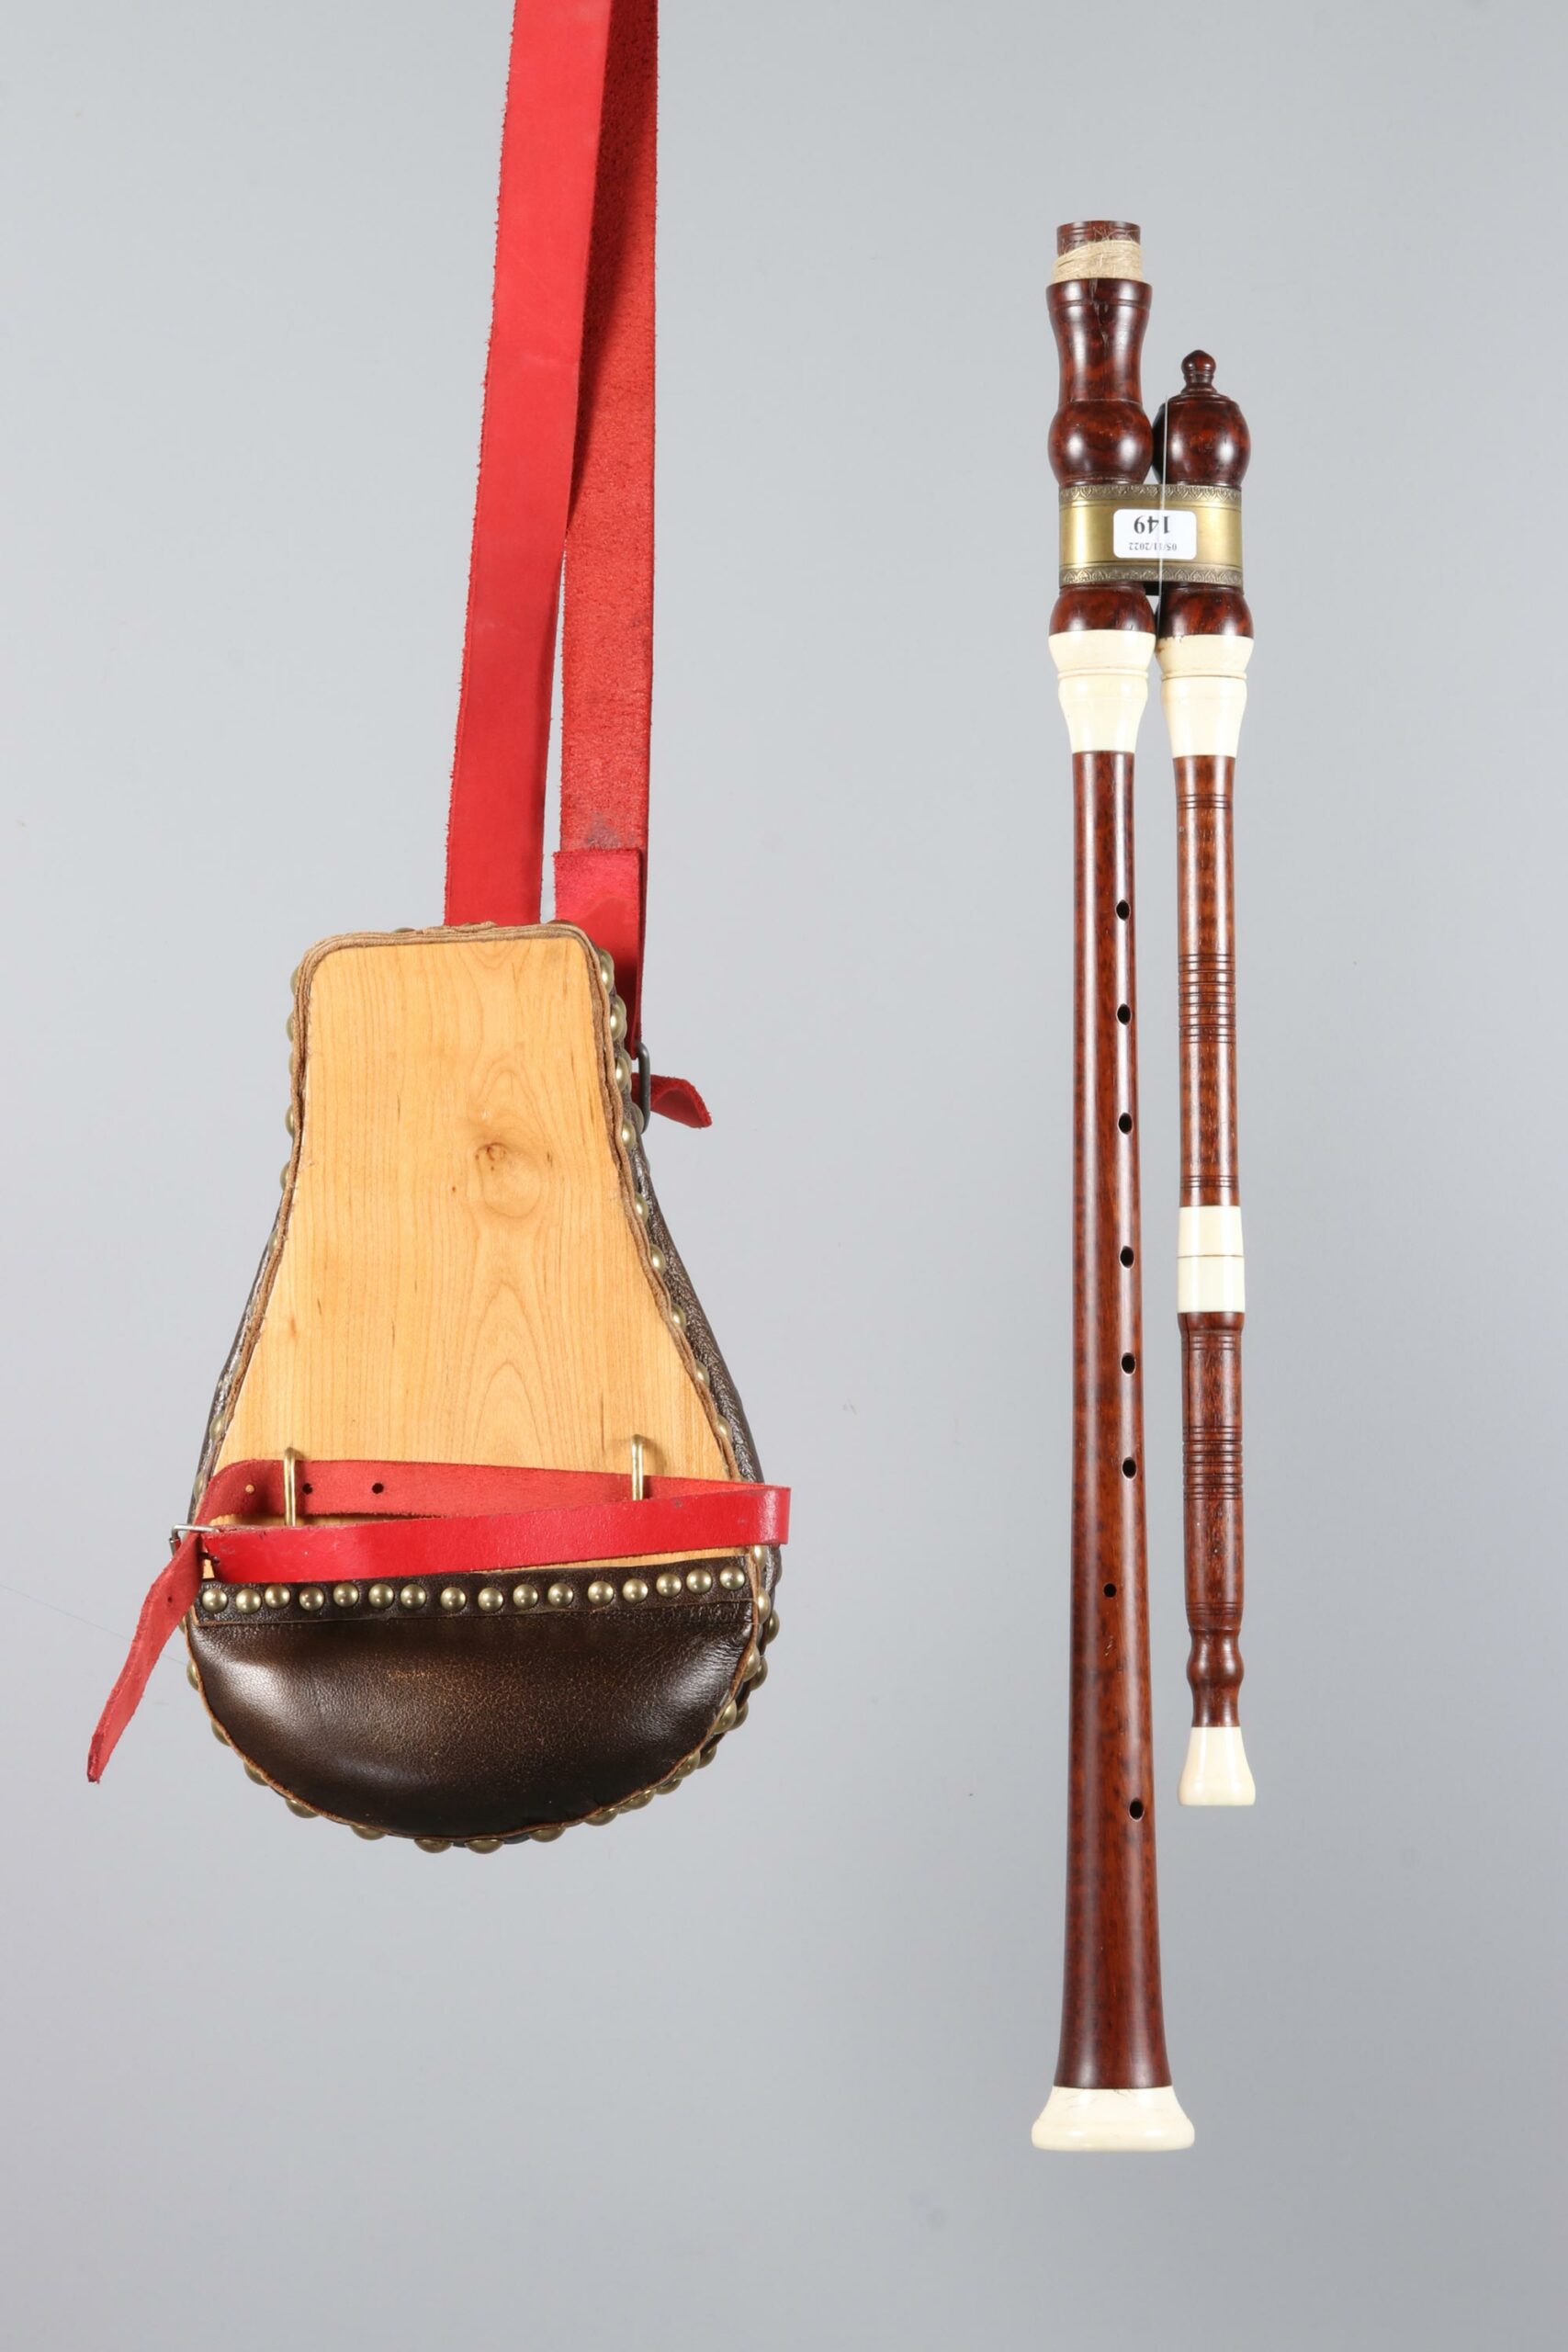 Cabrette complète en amourette, en Si (42cm) de Joseph RUOLS Instrument mis en vente par Vichy Enchères le 5 novembre 2022 © C. Darbelet